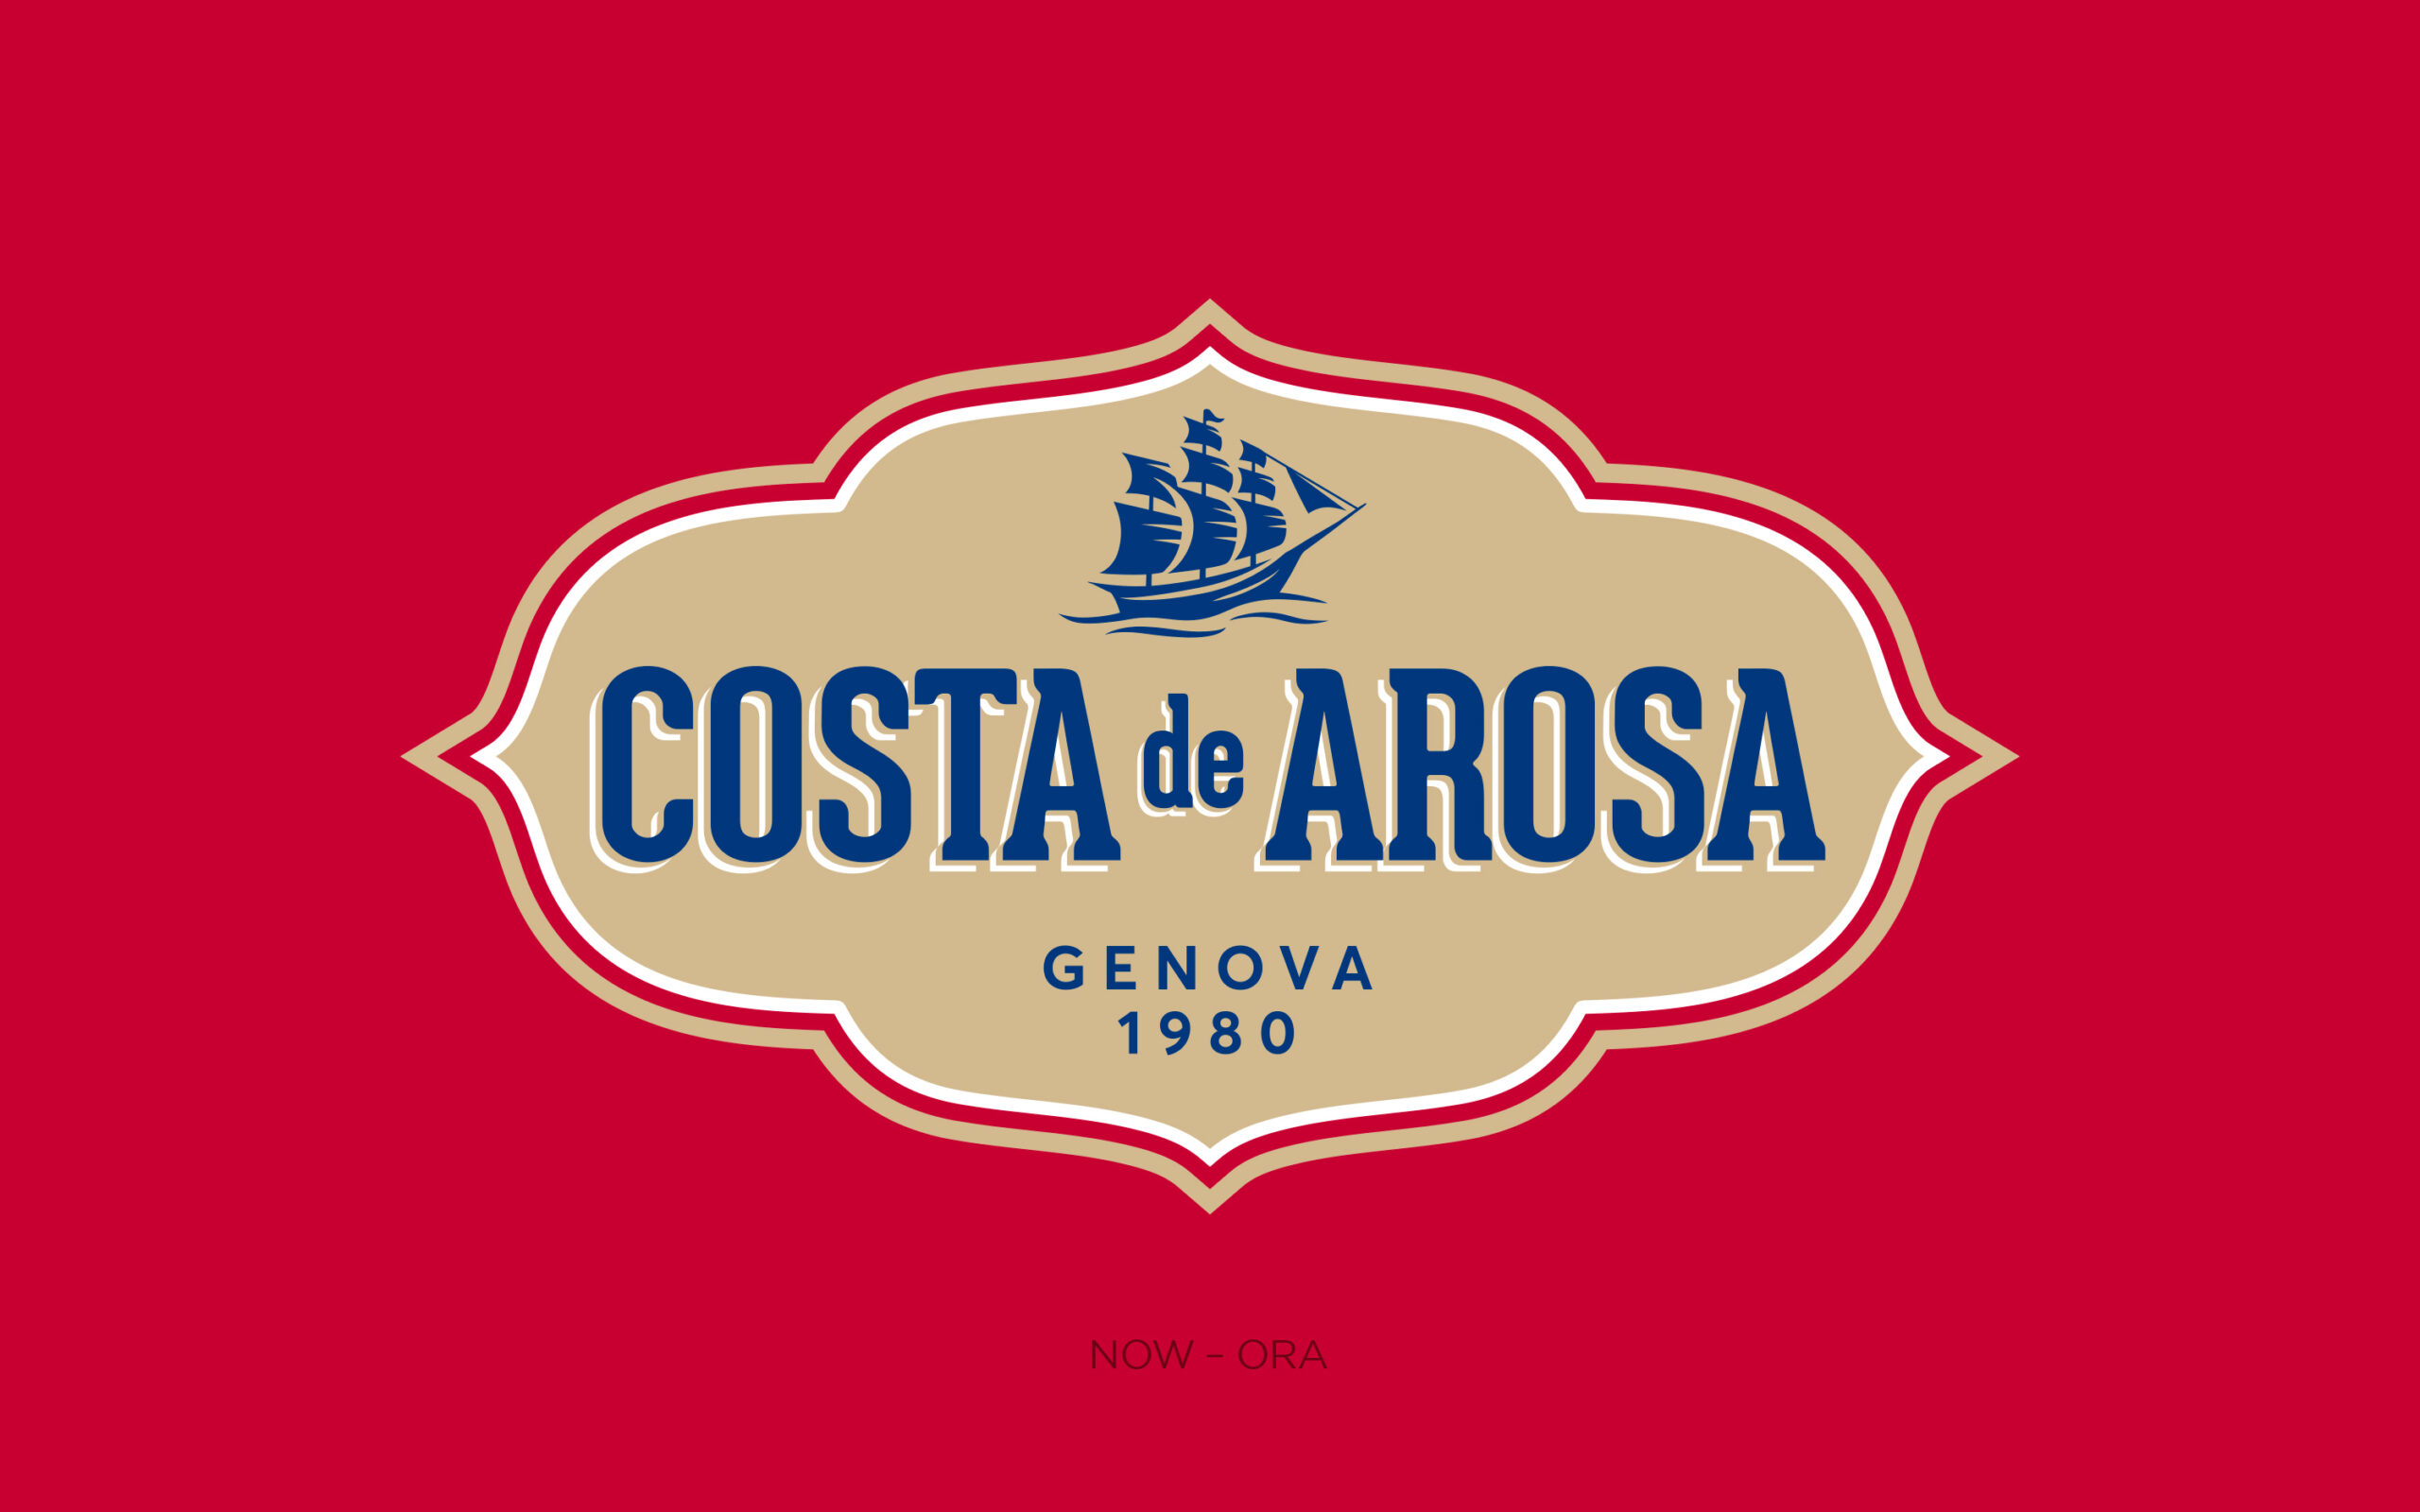 Costa de Arosa logo